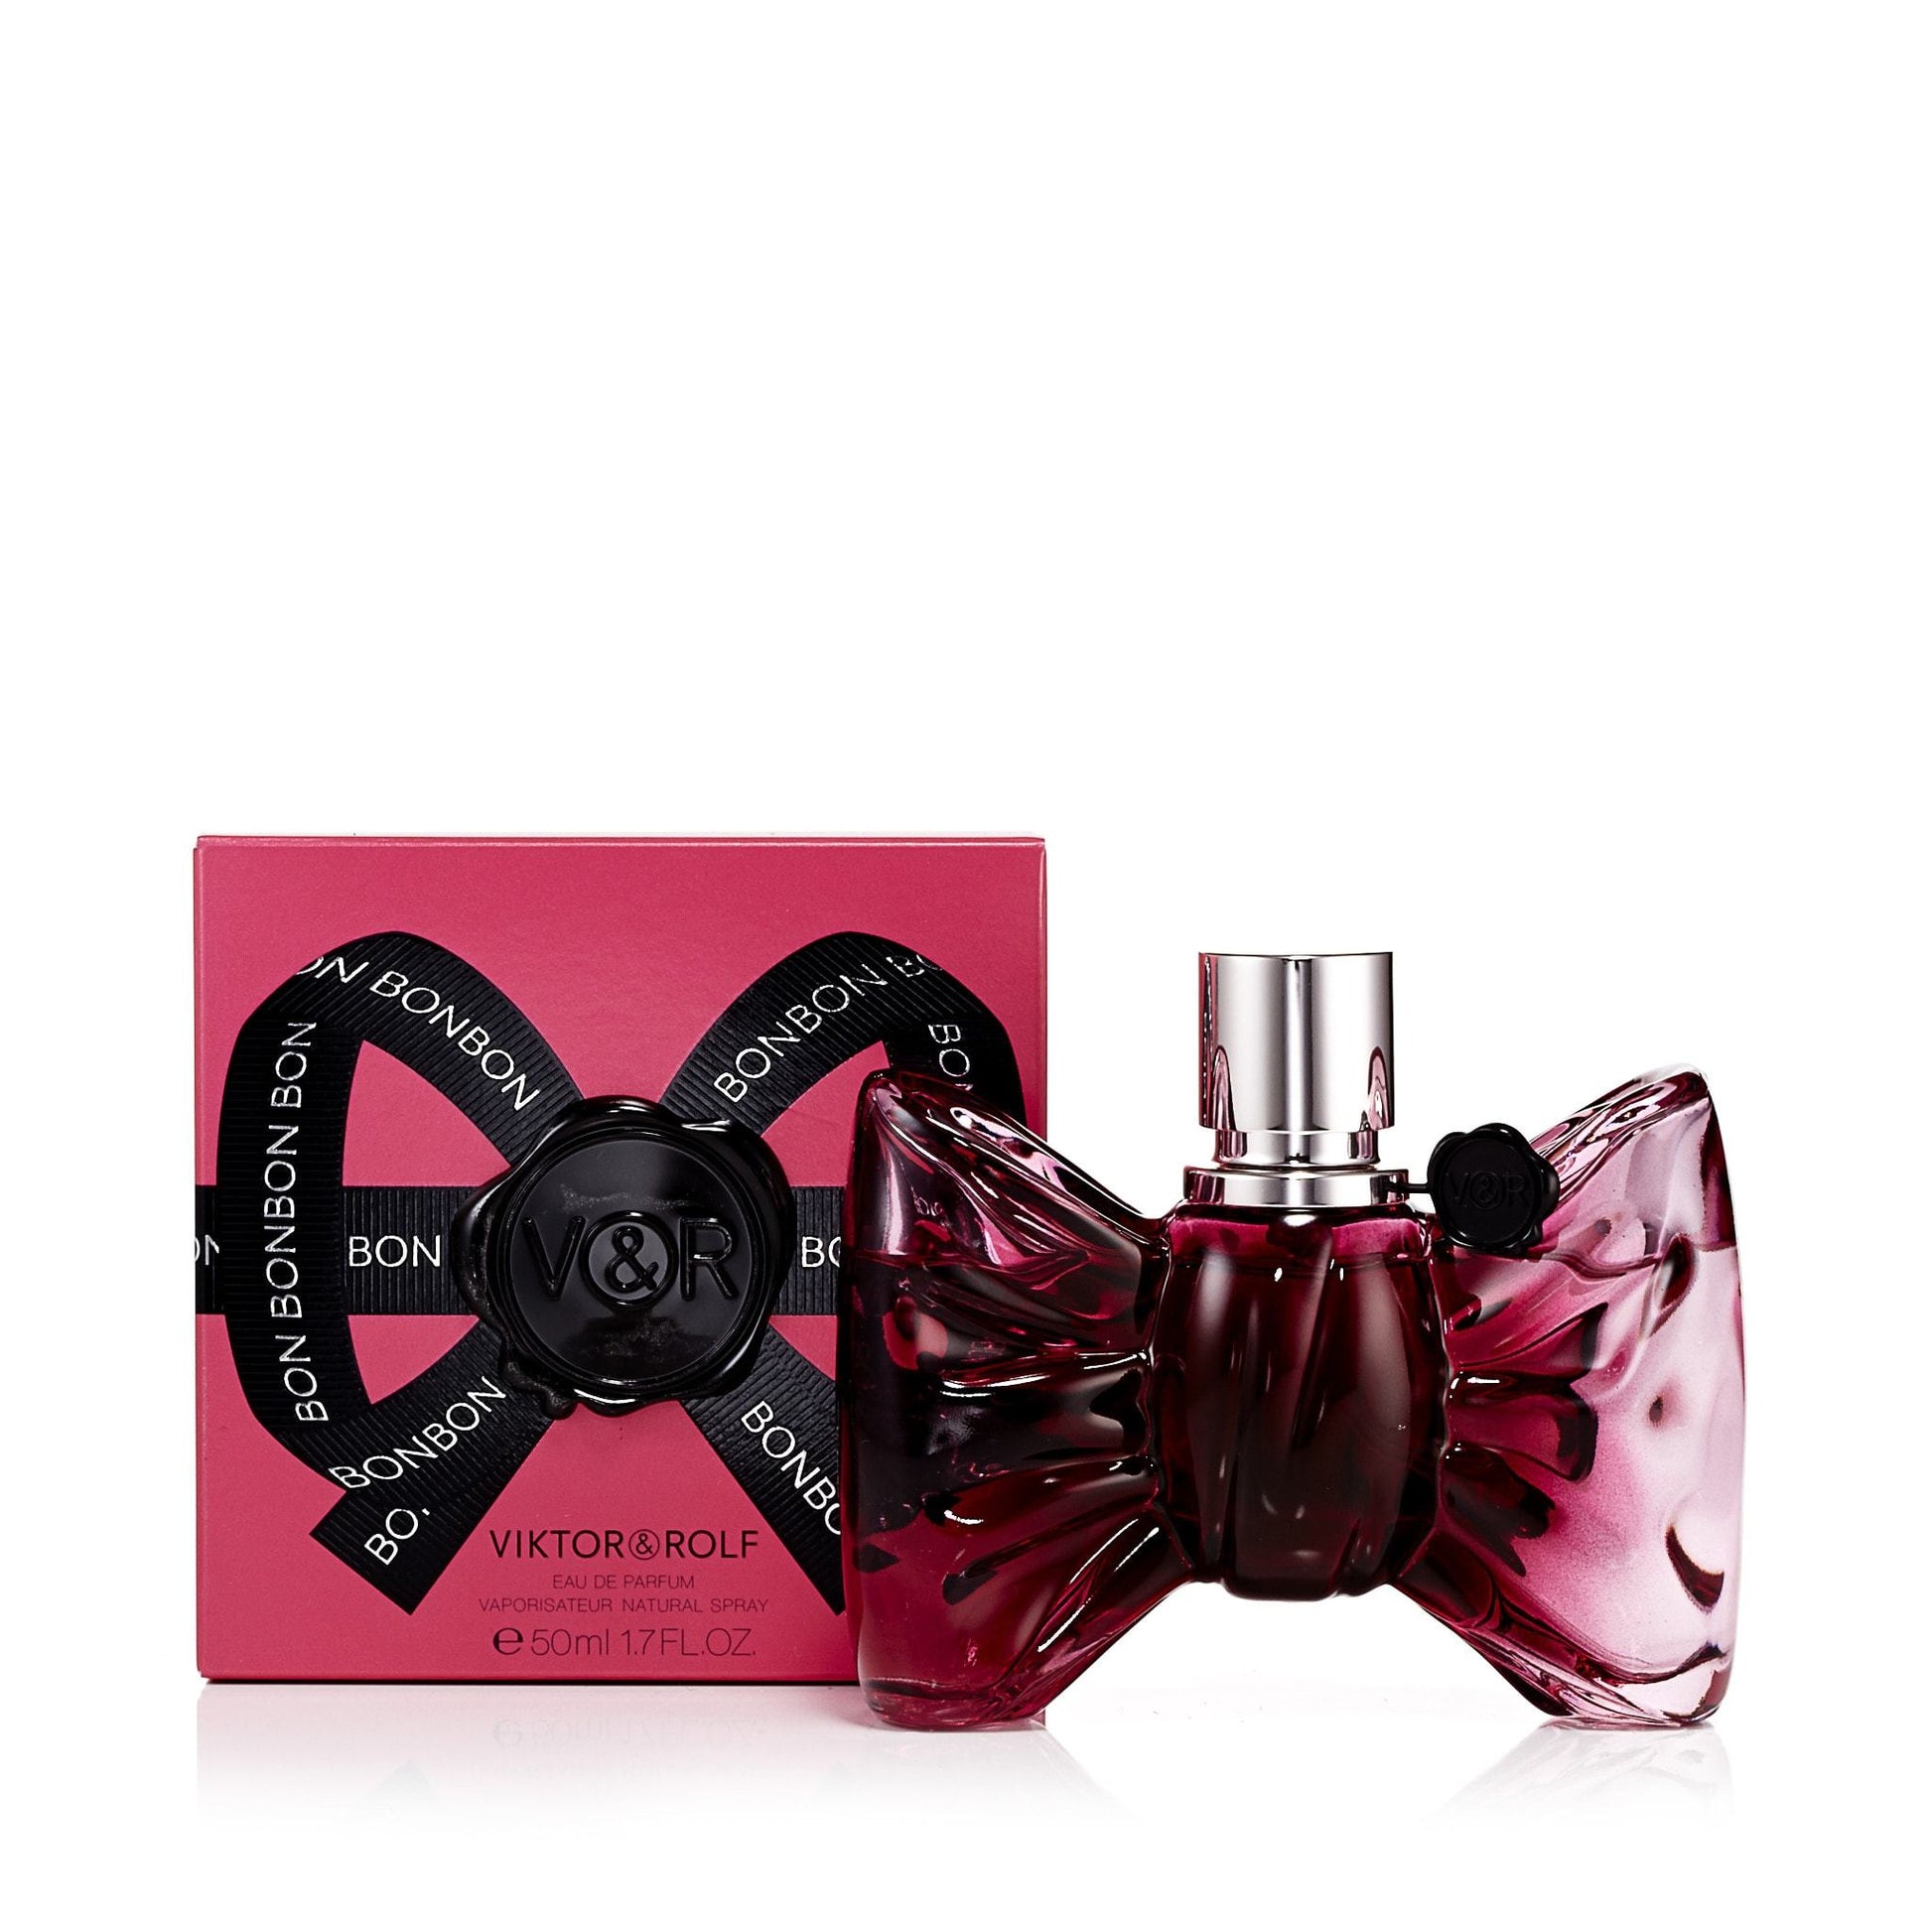 BonBon Eau de Parfum Spray for Women by Viktor & Rolf, Product image 1